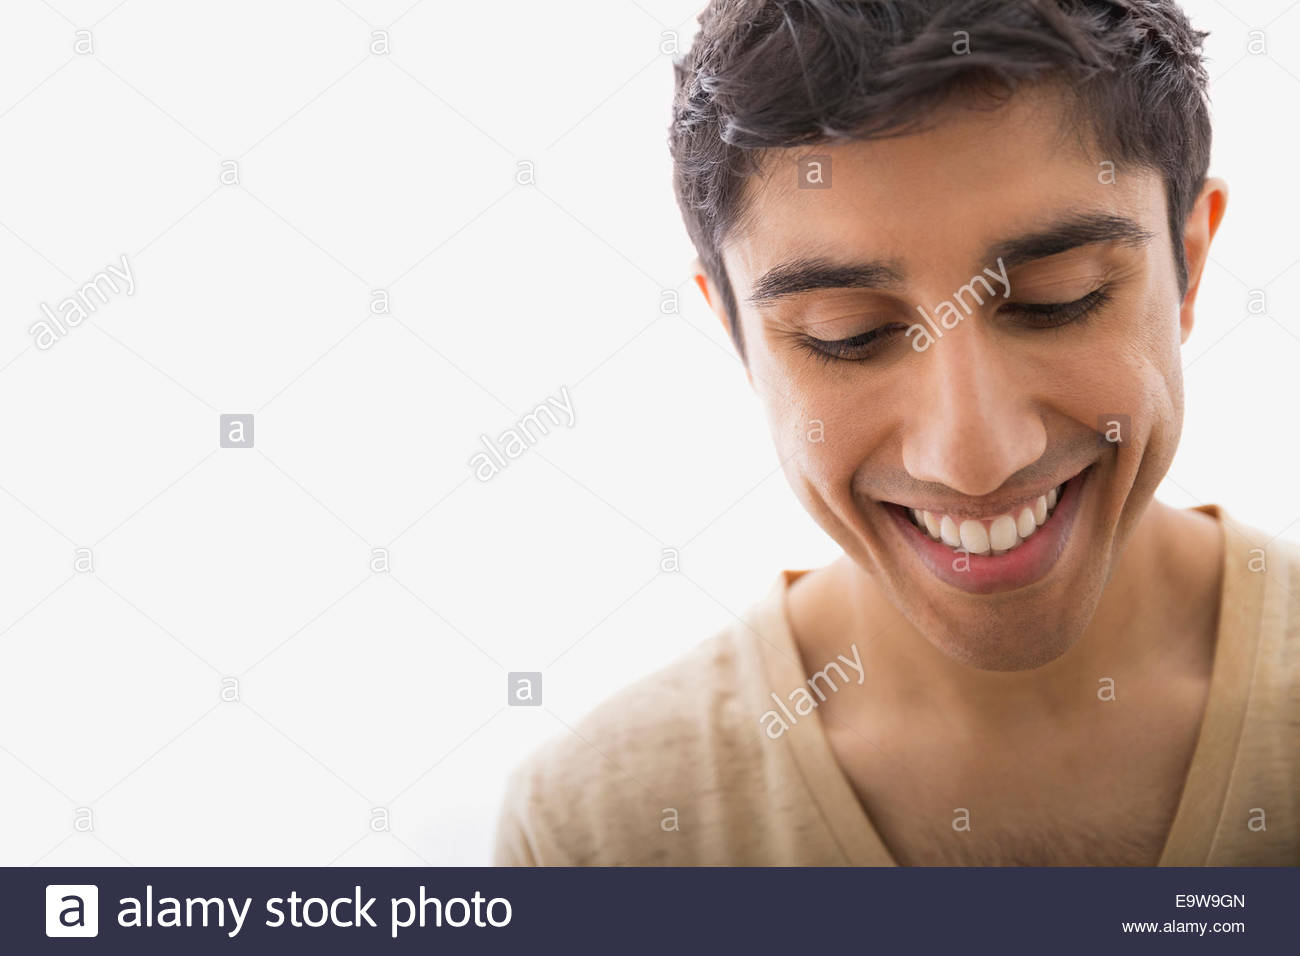 Cerrar retrato del hombre sonriente mirando hacia abajo Foto de stock